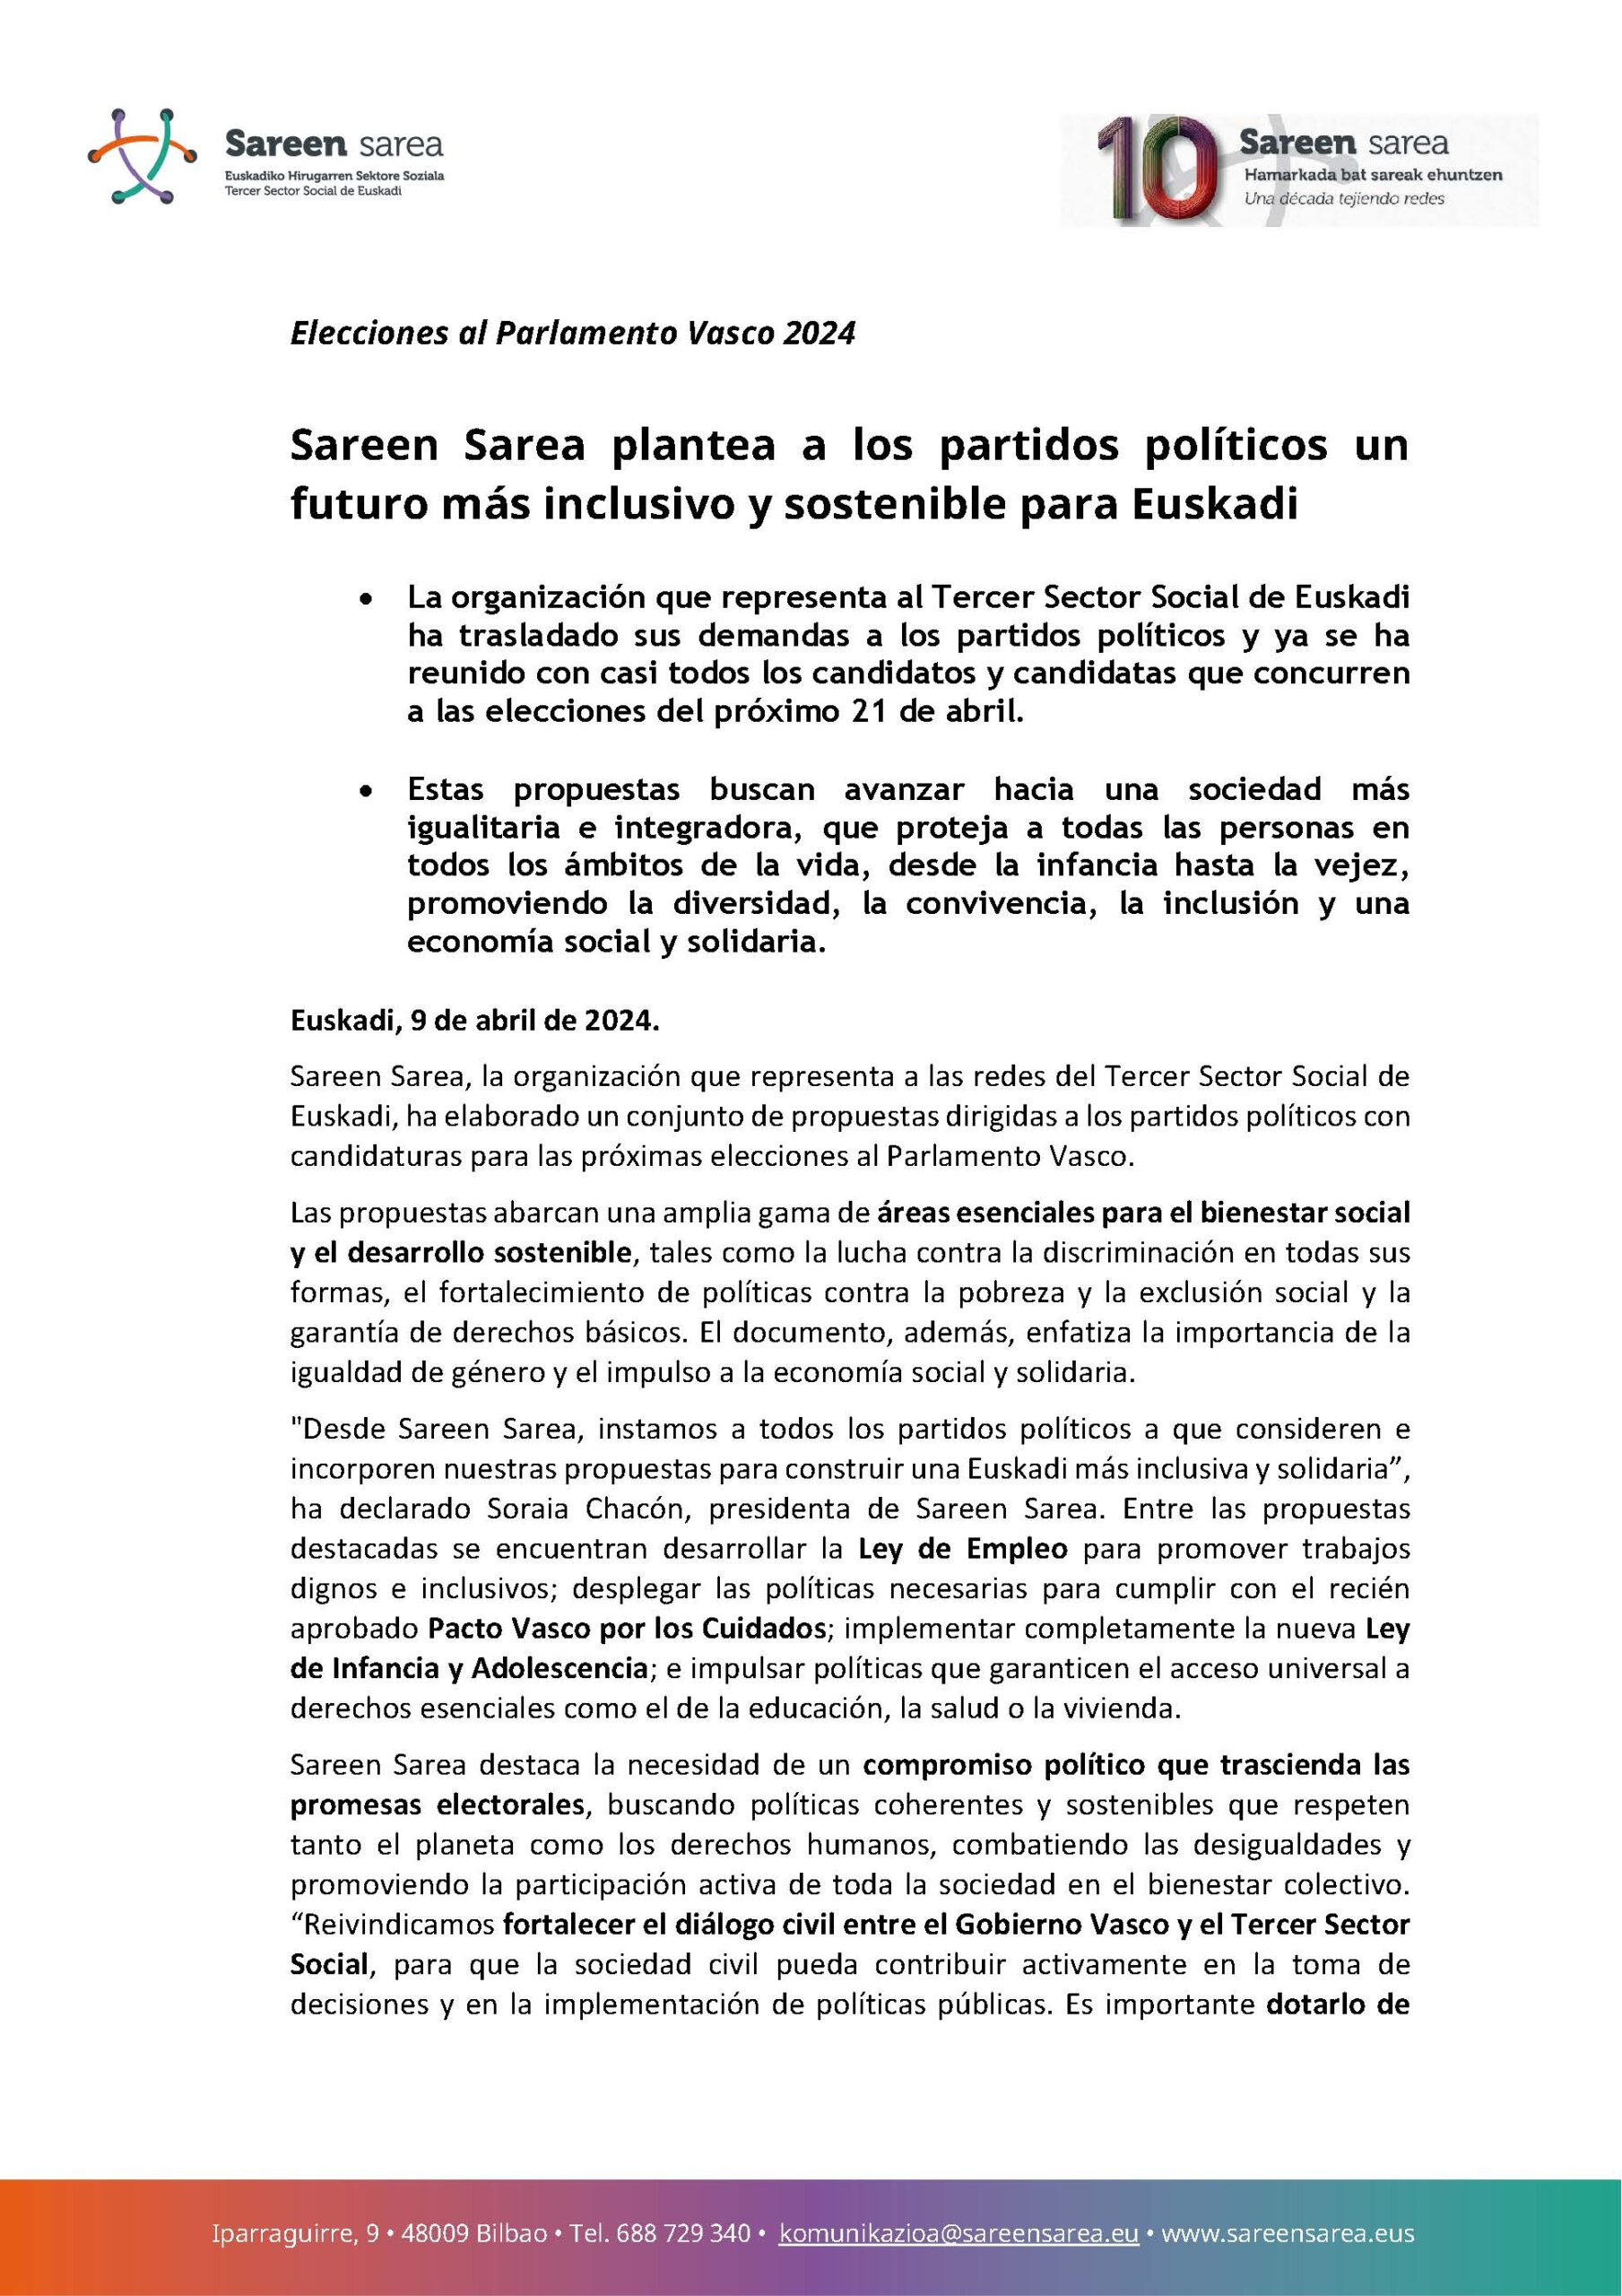 Nota de prensa: Elecciones Parlamento Vasco 2024